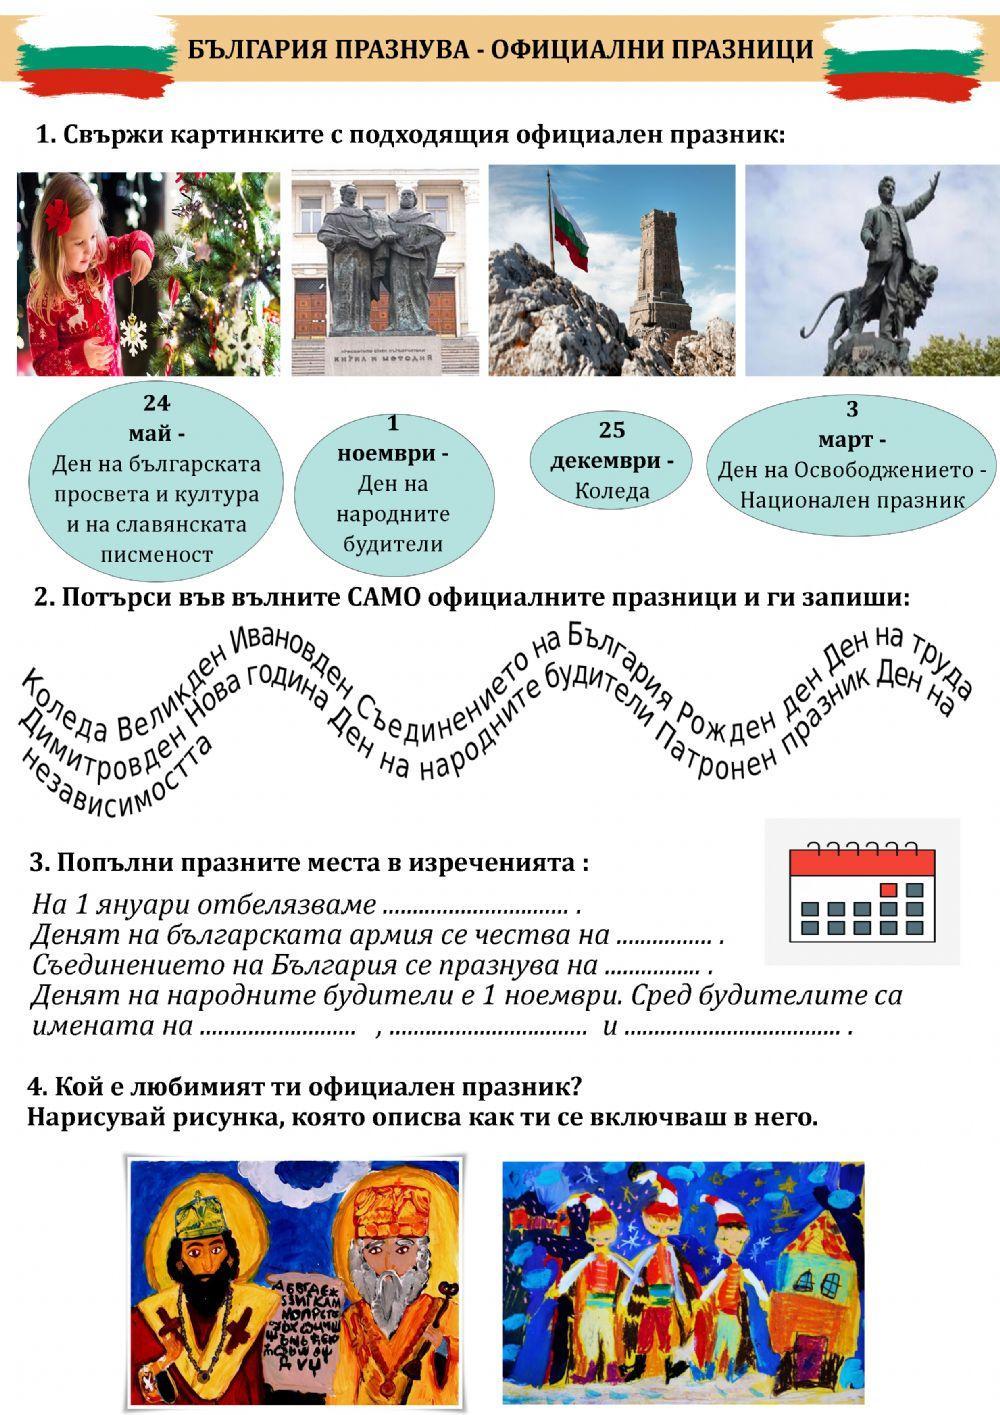 България празнува - официални празици